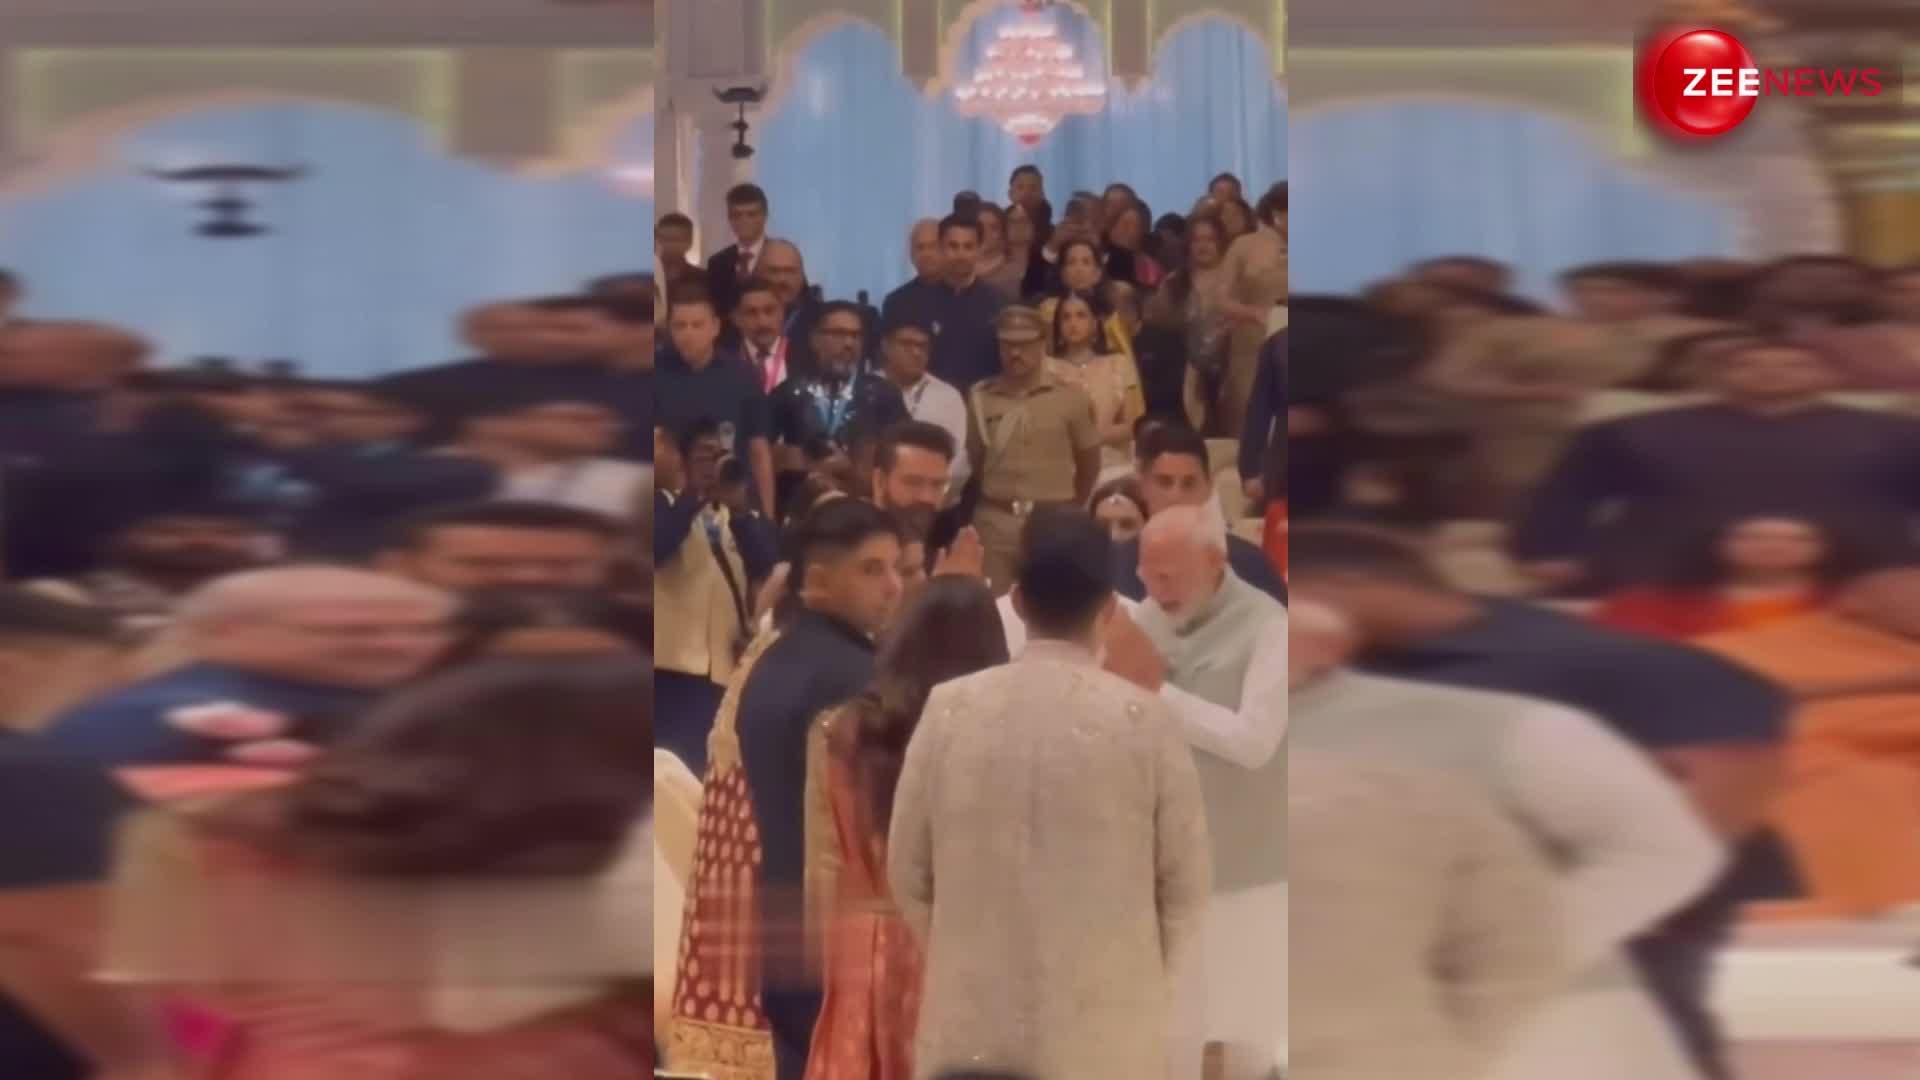 Anant-Radhika की शादी रिसेप्शन में शामिल हुए PM मोदी, कपल ने छुए पैर और माथे से लगाया तोहफा, वायरल हुआ VIDEO